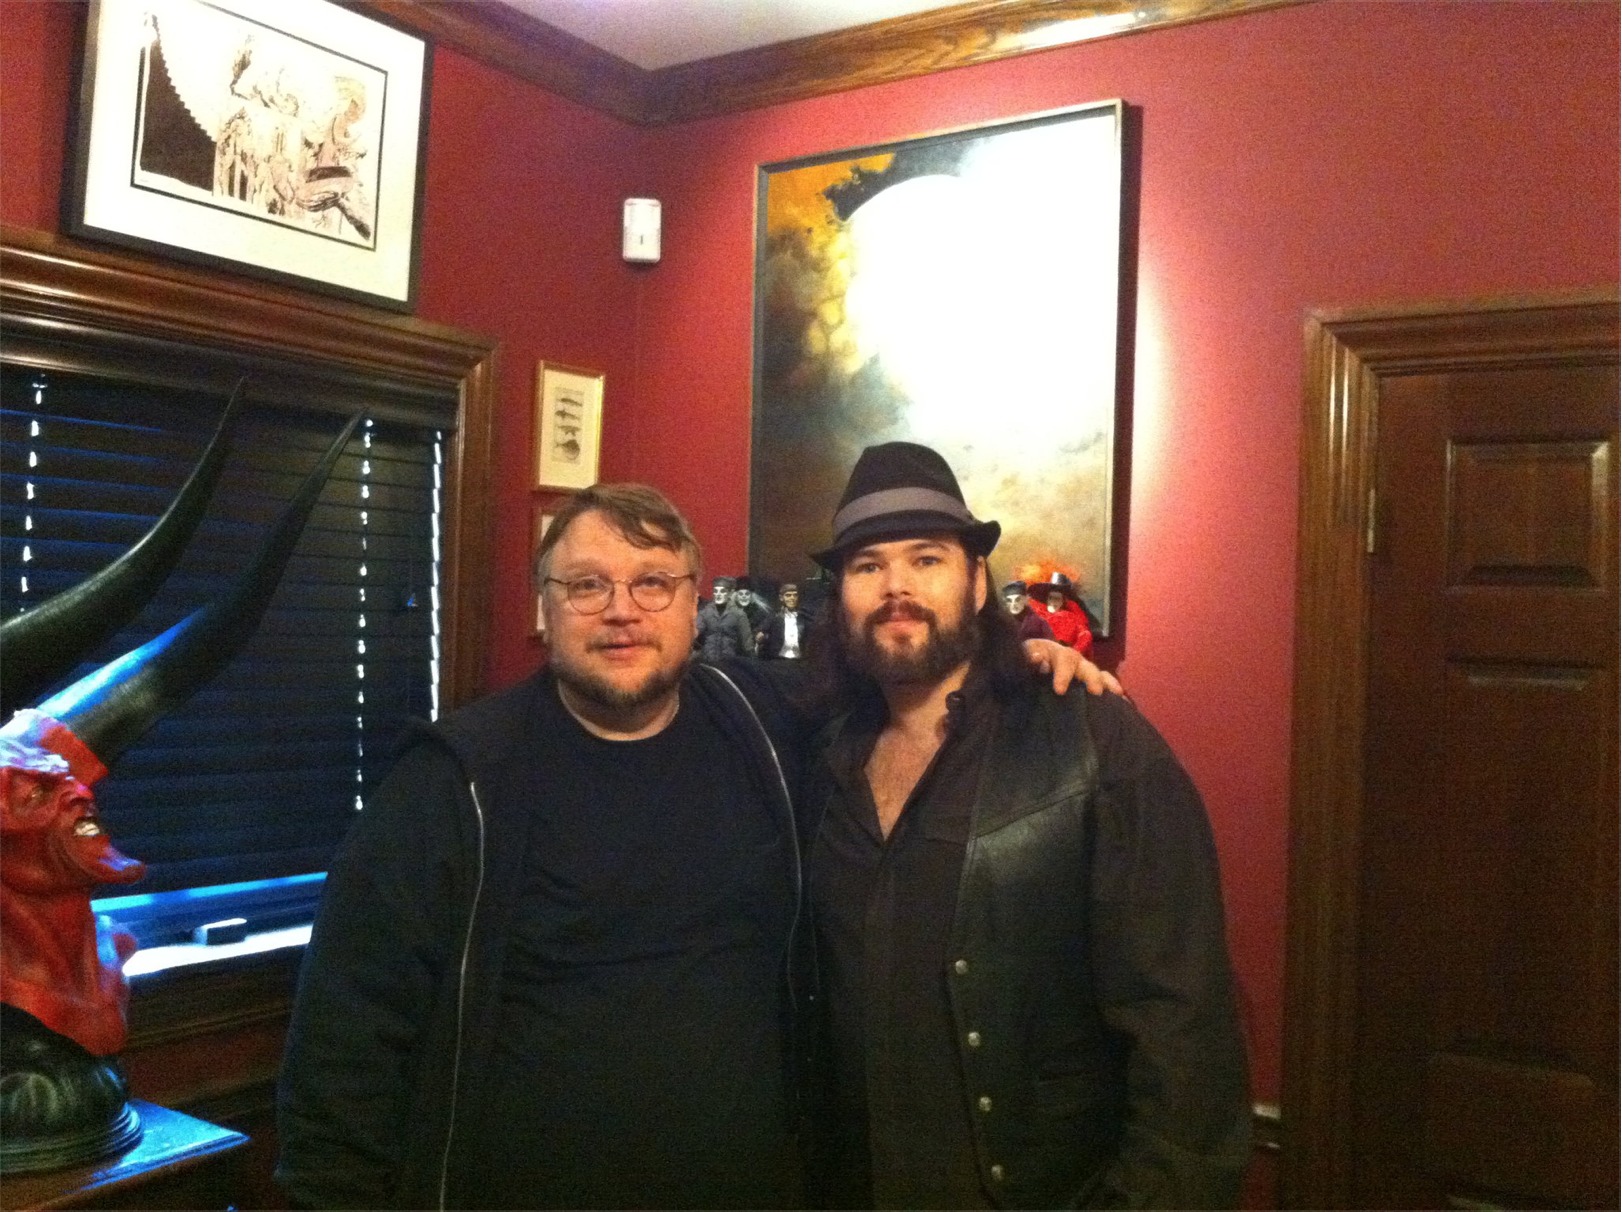 Guillermo del Toro and Chip Joslin